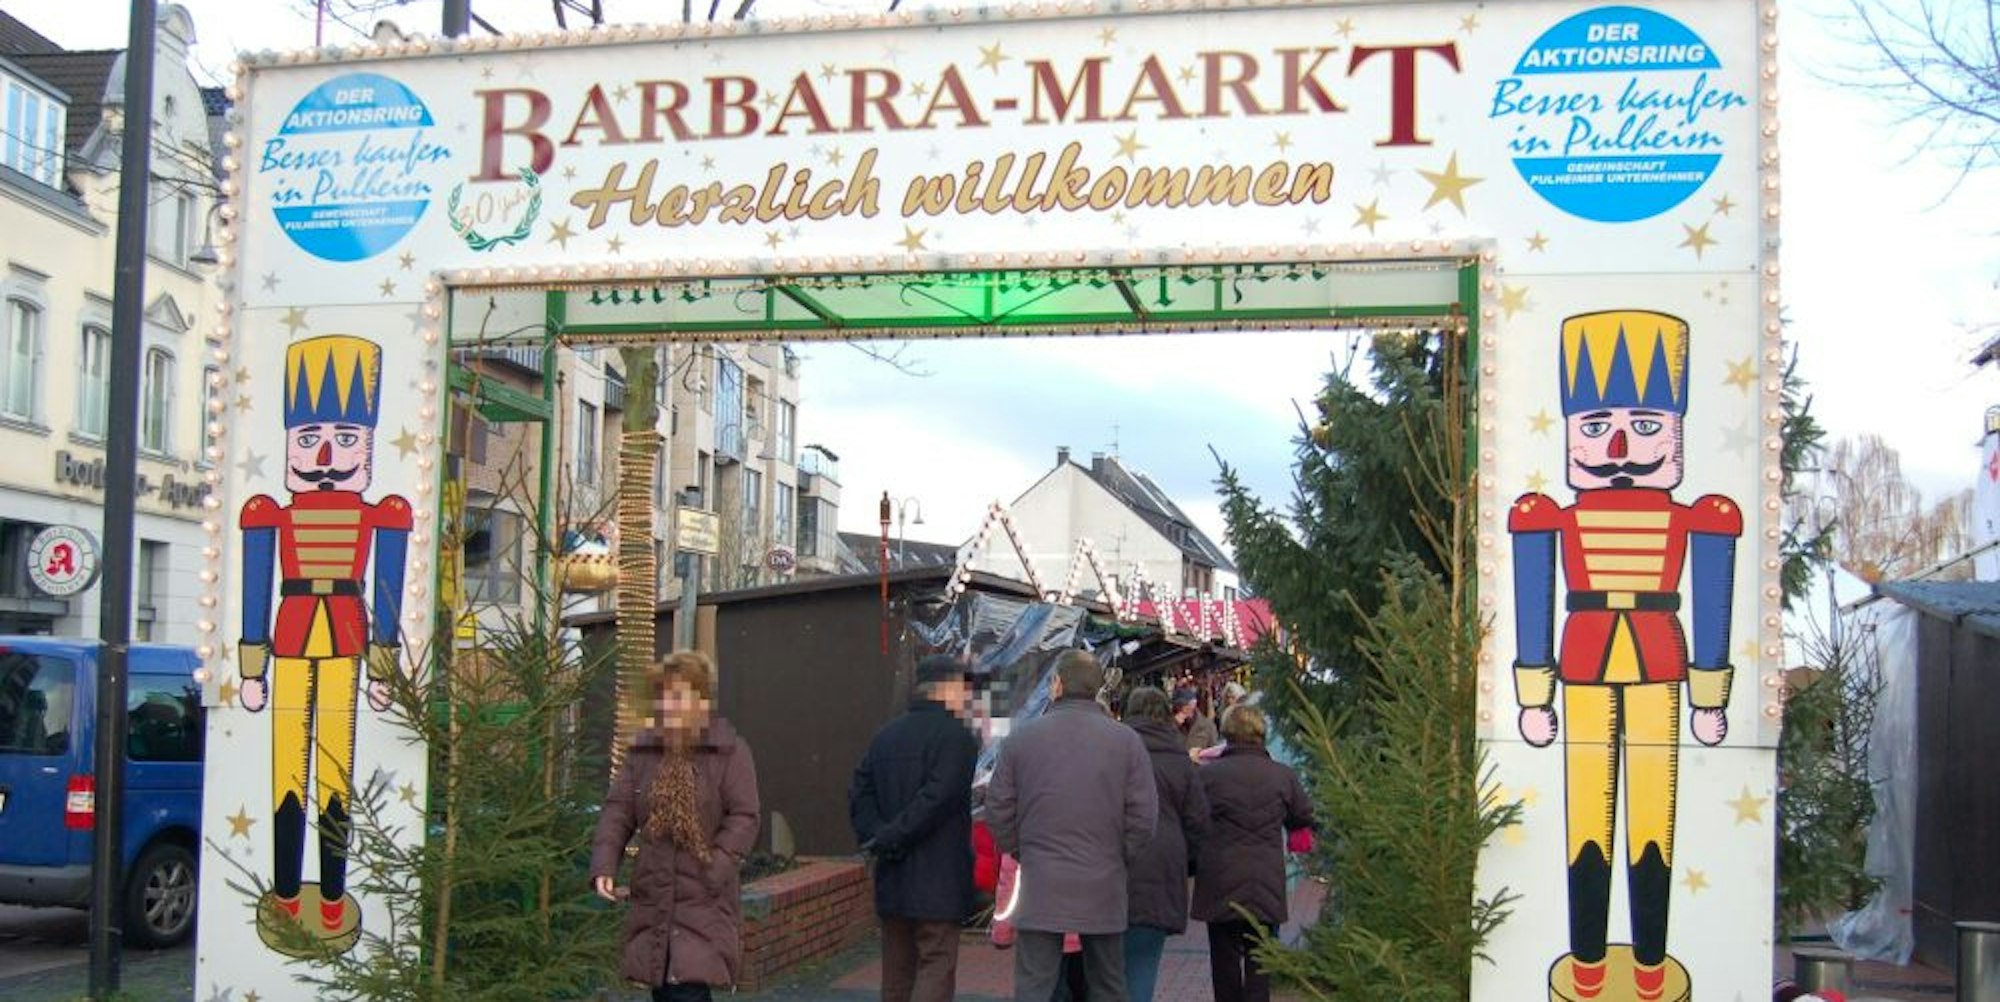 Nach fast 40 Jahren wird der Barbaramarkt in diesem Jahr nicht stattfinden. Der Aktionsring hat ihn abgesagt.